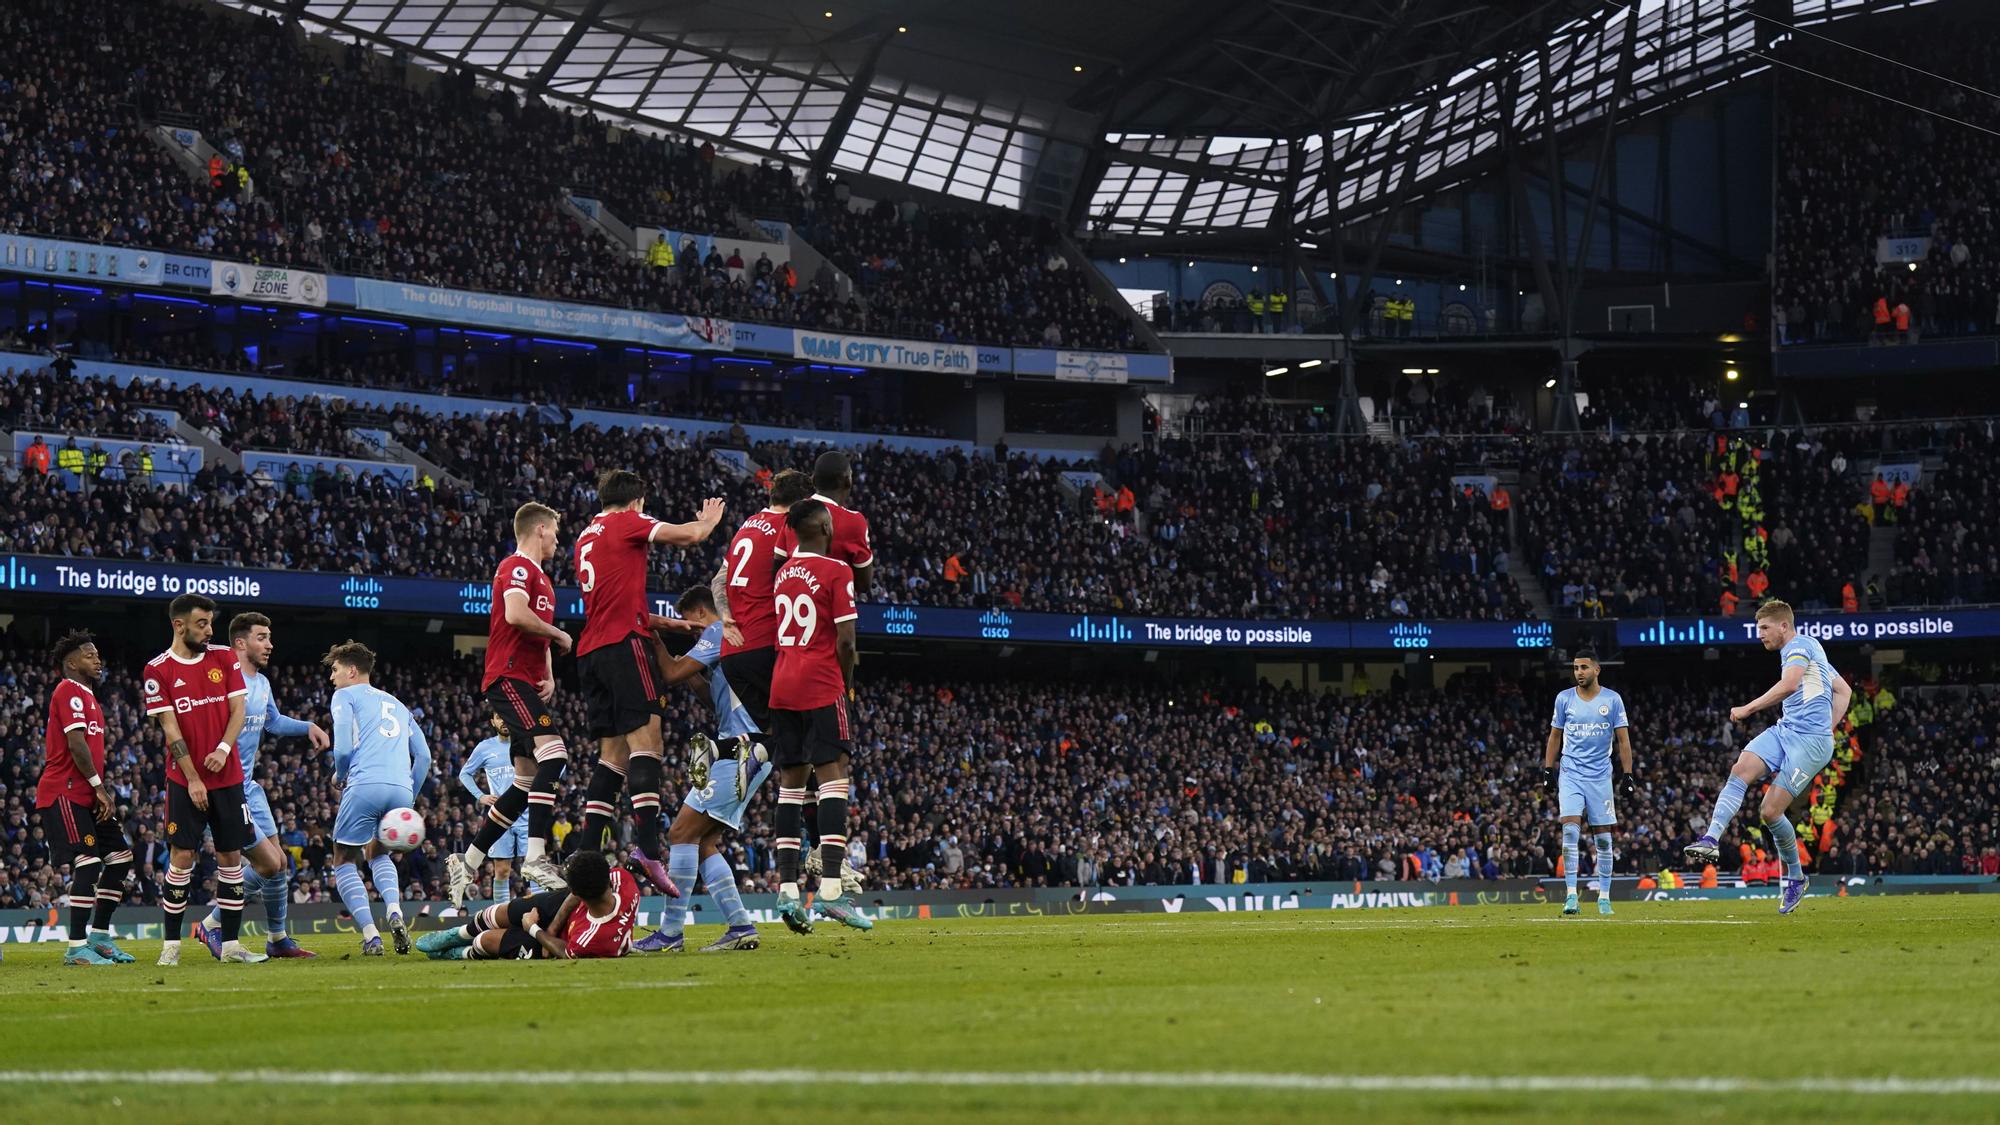 El Manchester City barrió a su máximo rival en el derbi de Manchester | EFE